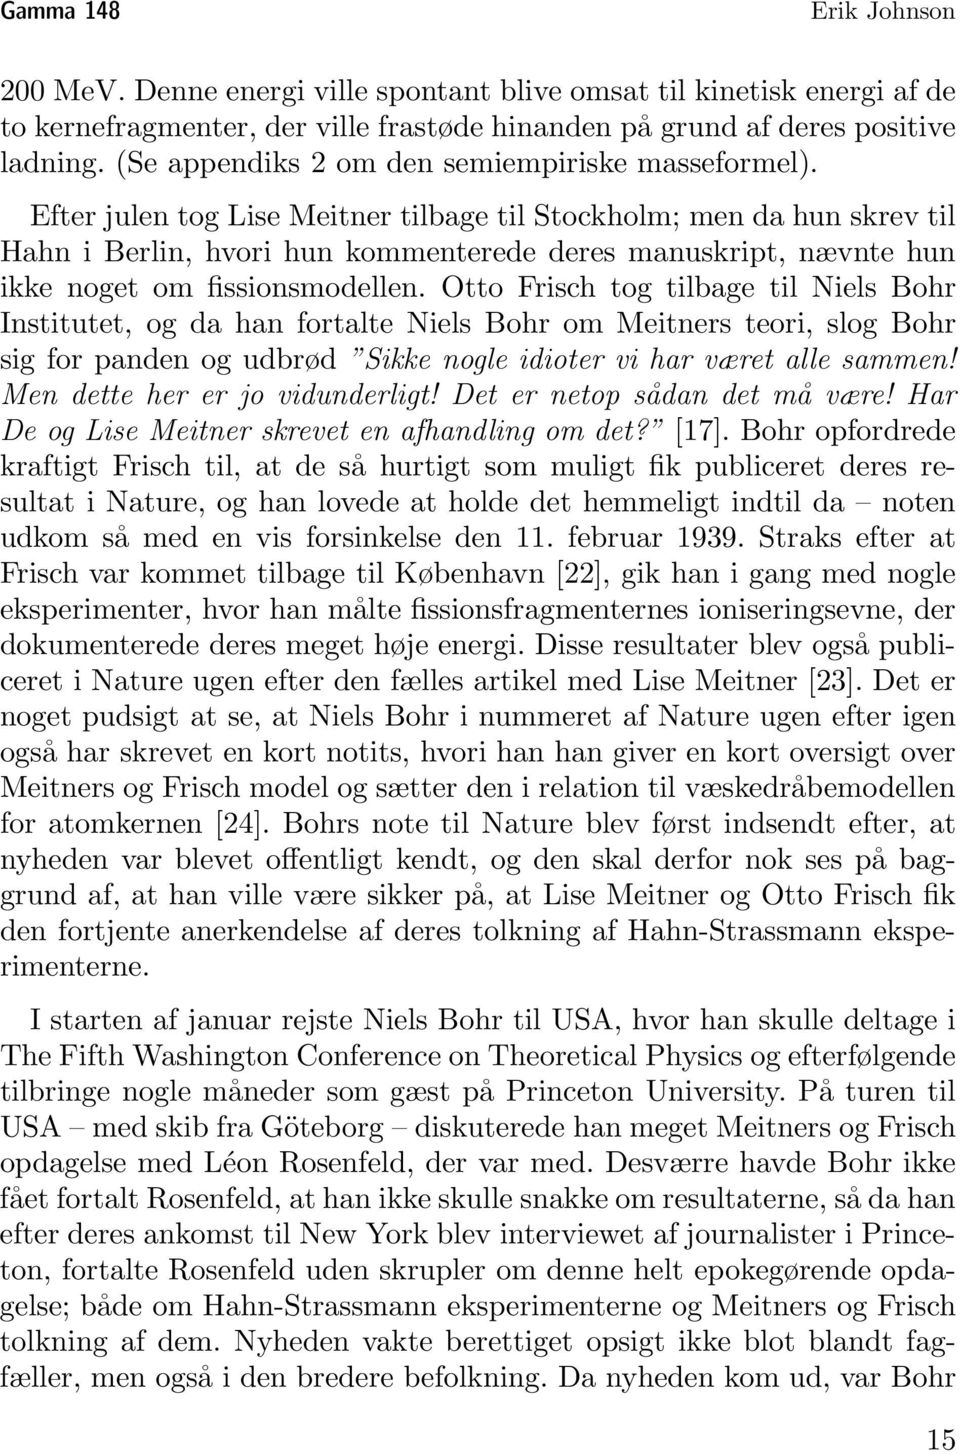 Efter julen tog Lise Meitner tilbage til Stockholm; men da hun skrev til Hahn i Berlin, hvori hun kommenterede deres manuskript, nævnte hun ikke noget om fissionsmodellen.